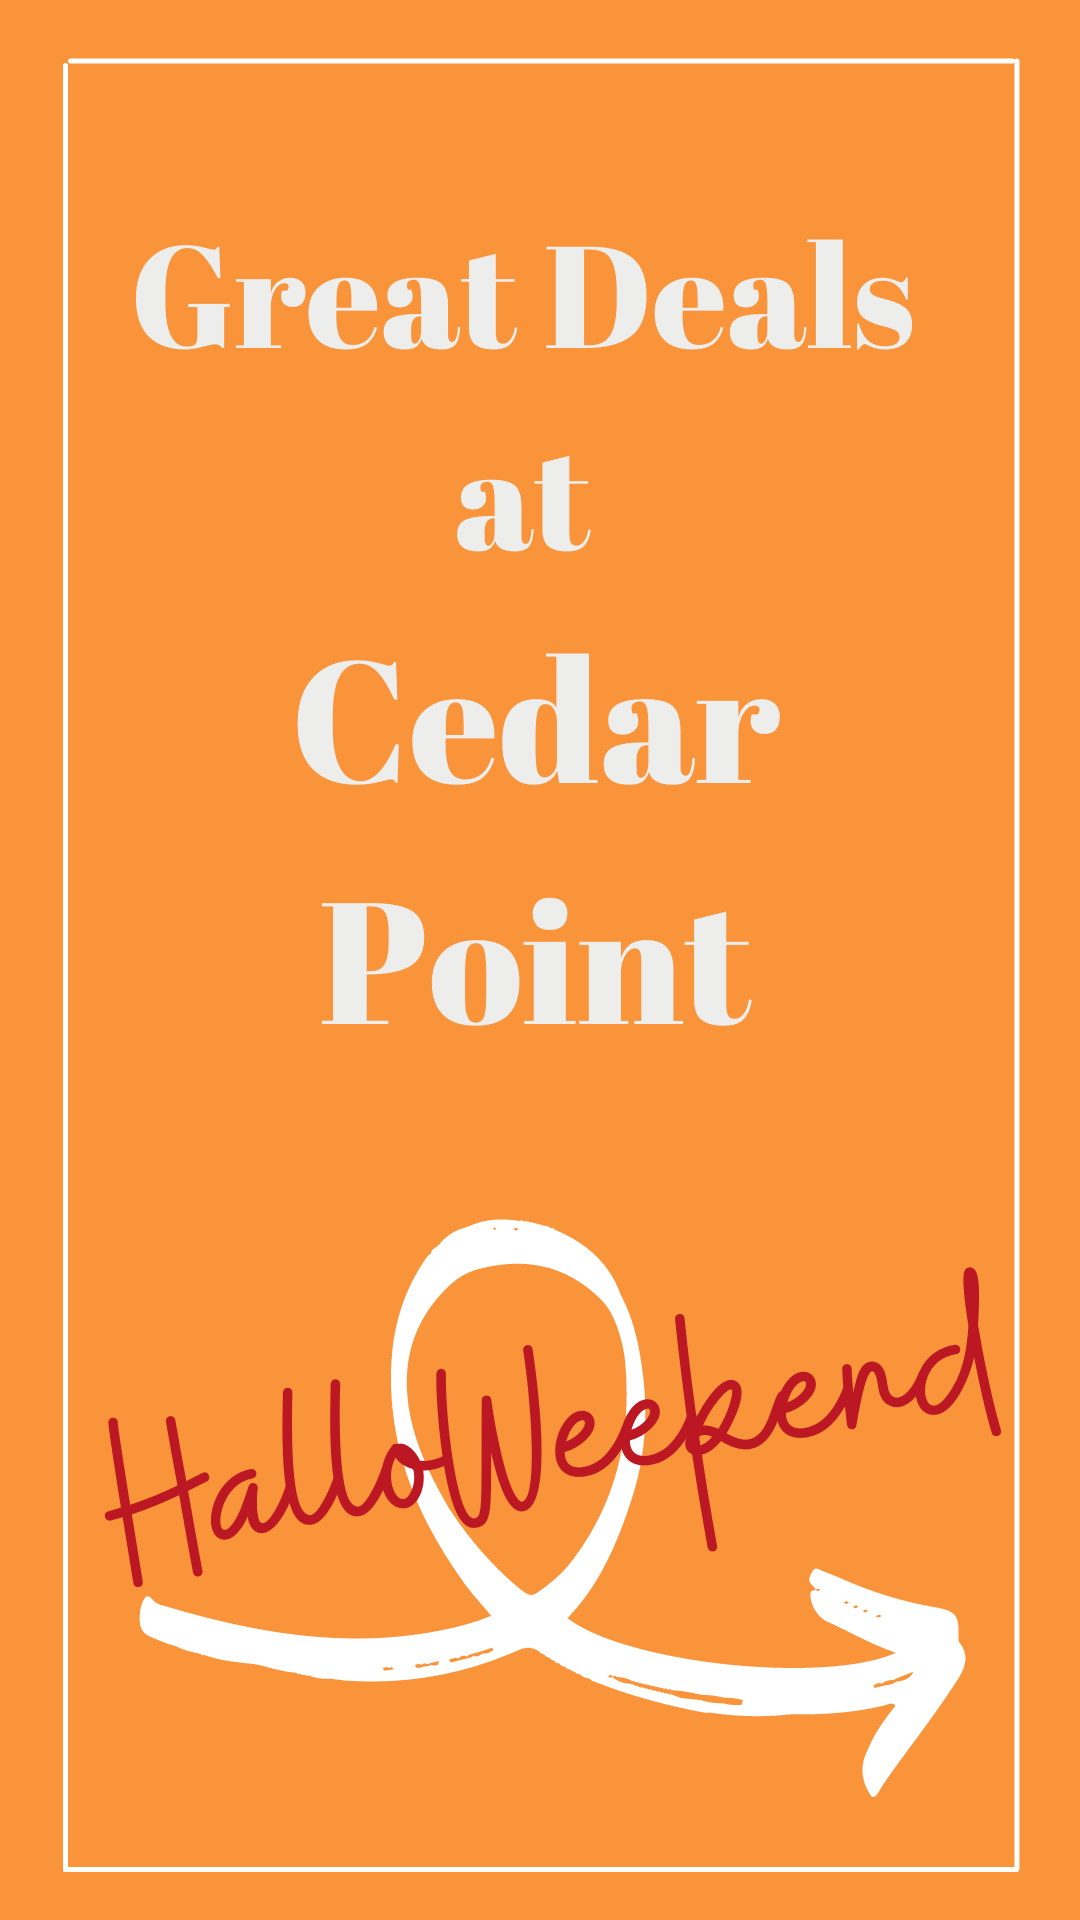 Great Deals at Cedar Point HalloWeekend